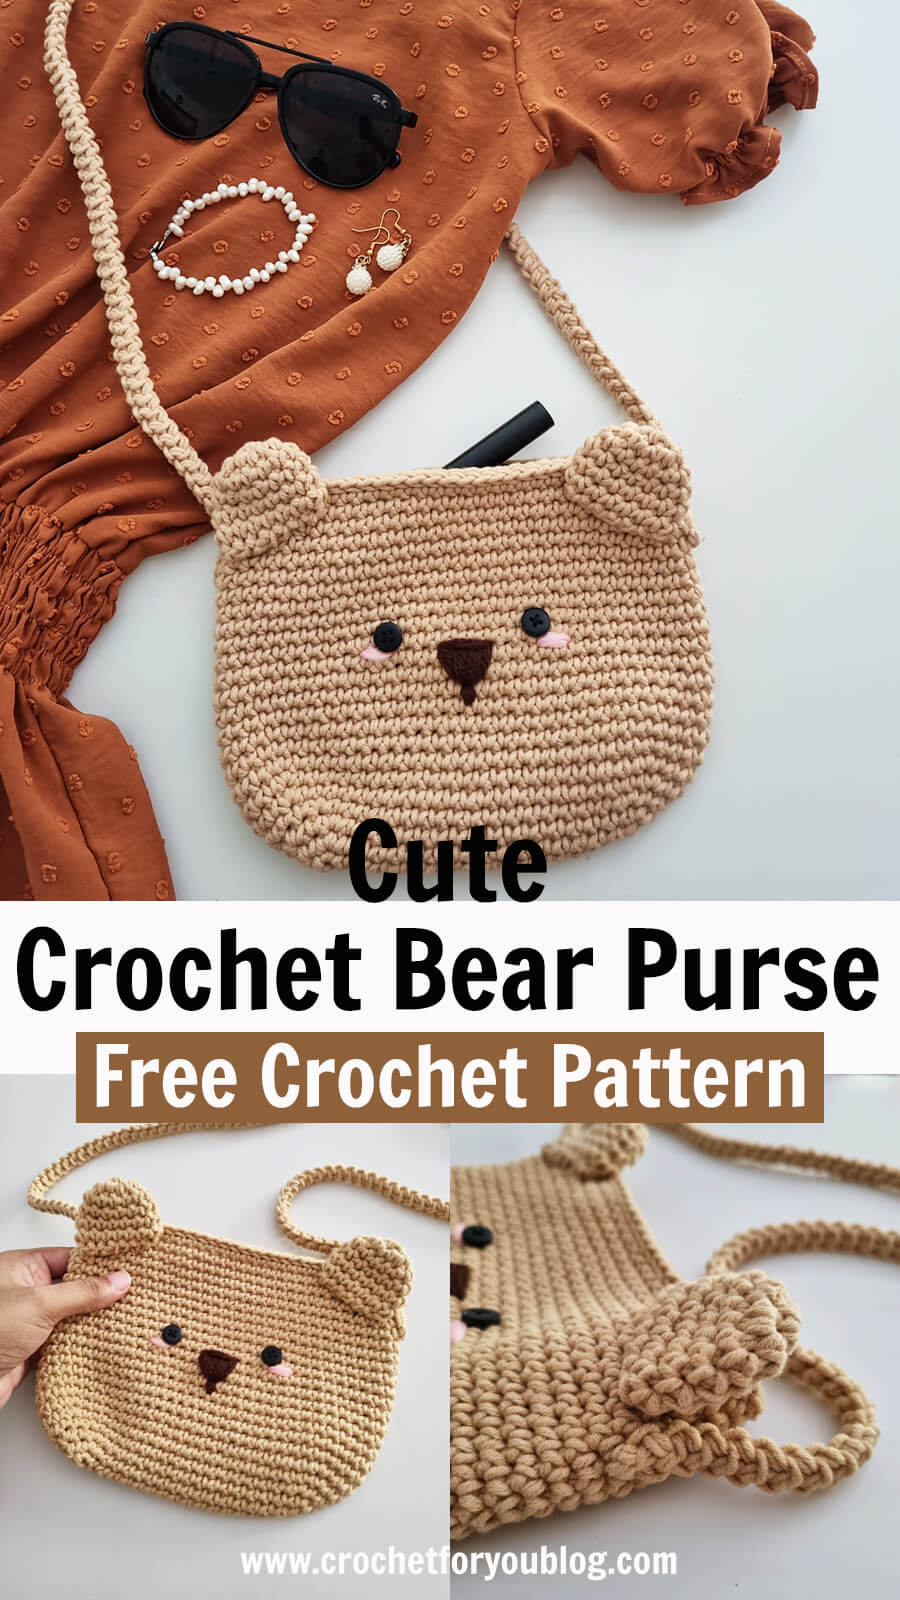 Crochet Kids Purse – The Yarn Bowl Crochet